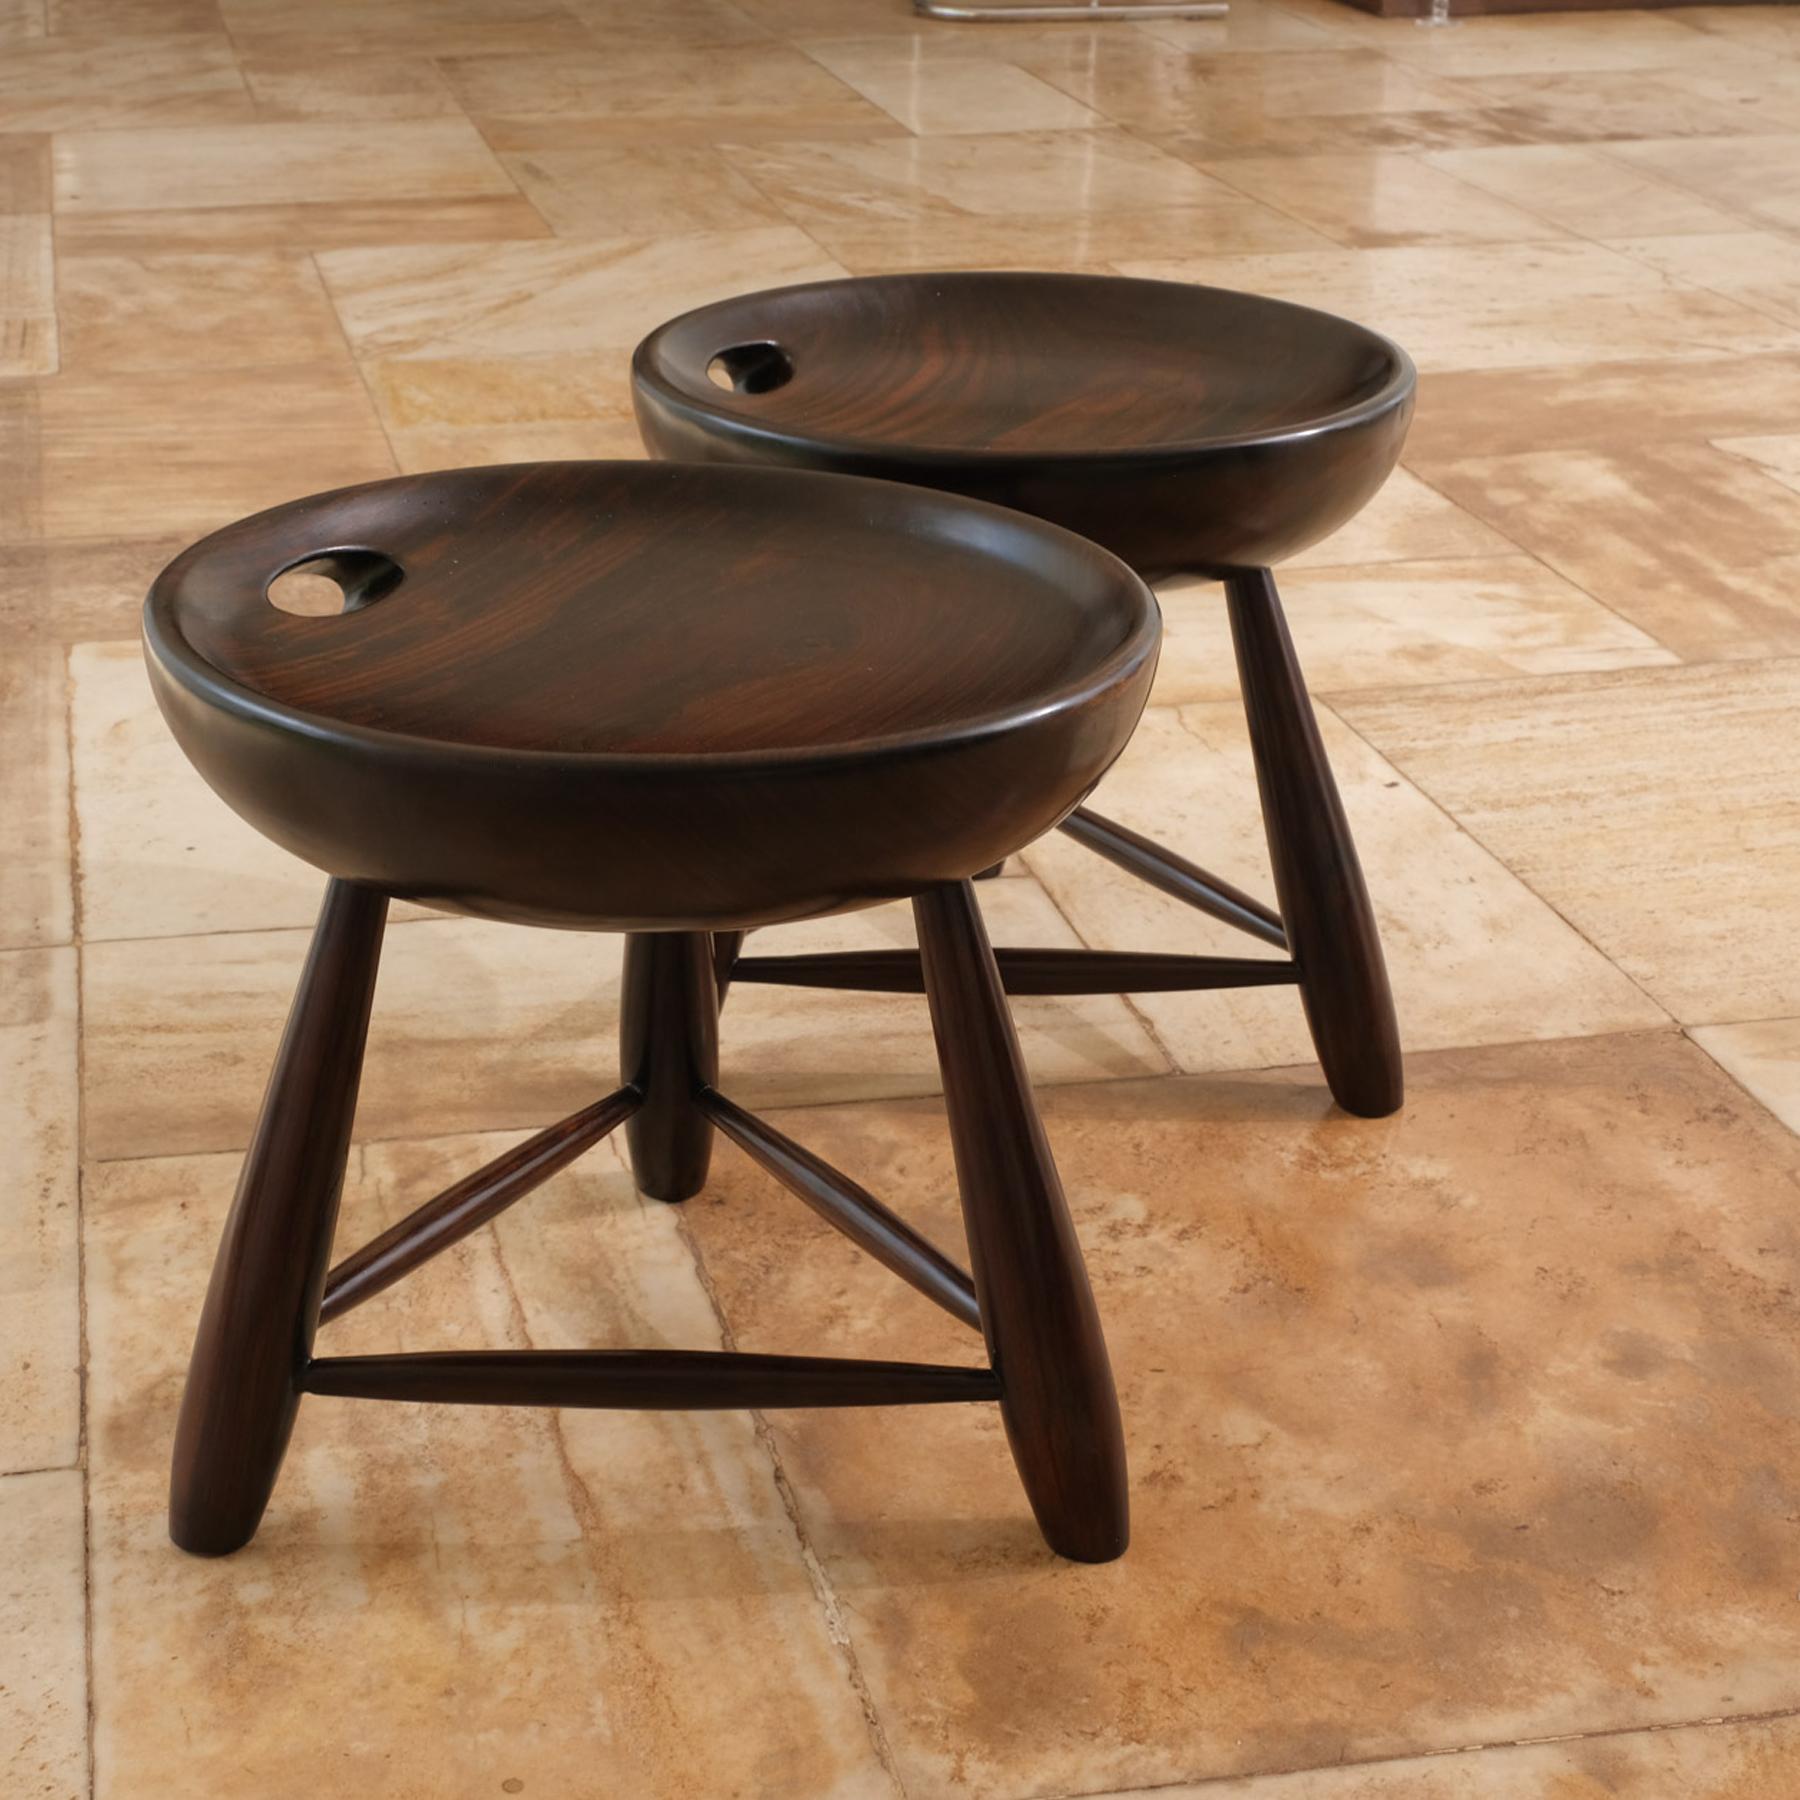 Le tabouret mocho a été conçu par Sergio Rodrigues en 1954, avant de fonder le magasin Oca.
Fabriqué en bois massif tourné, il est une interprétation libre du 